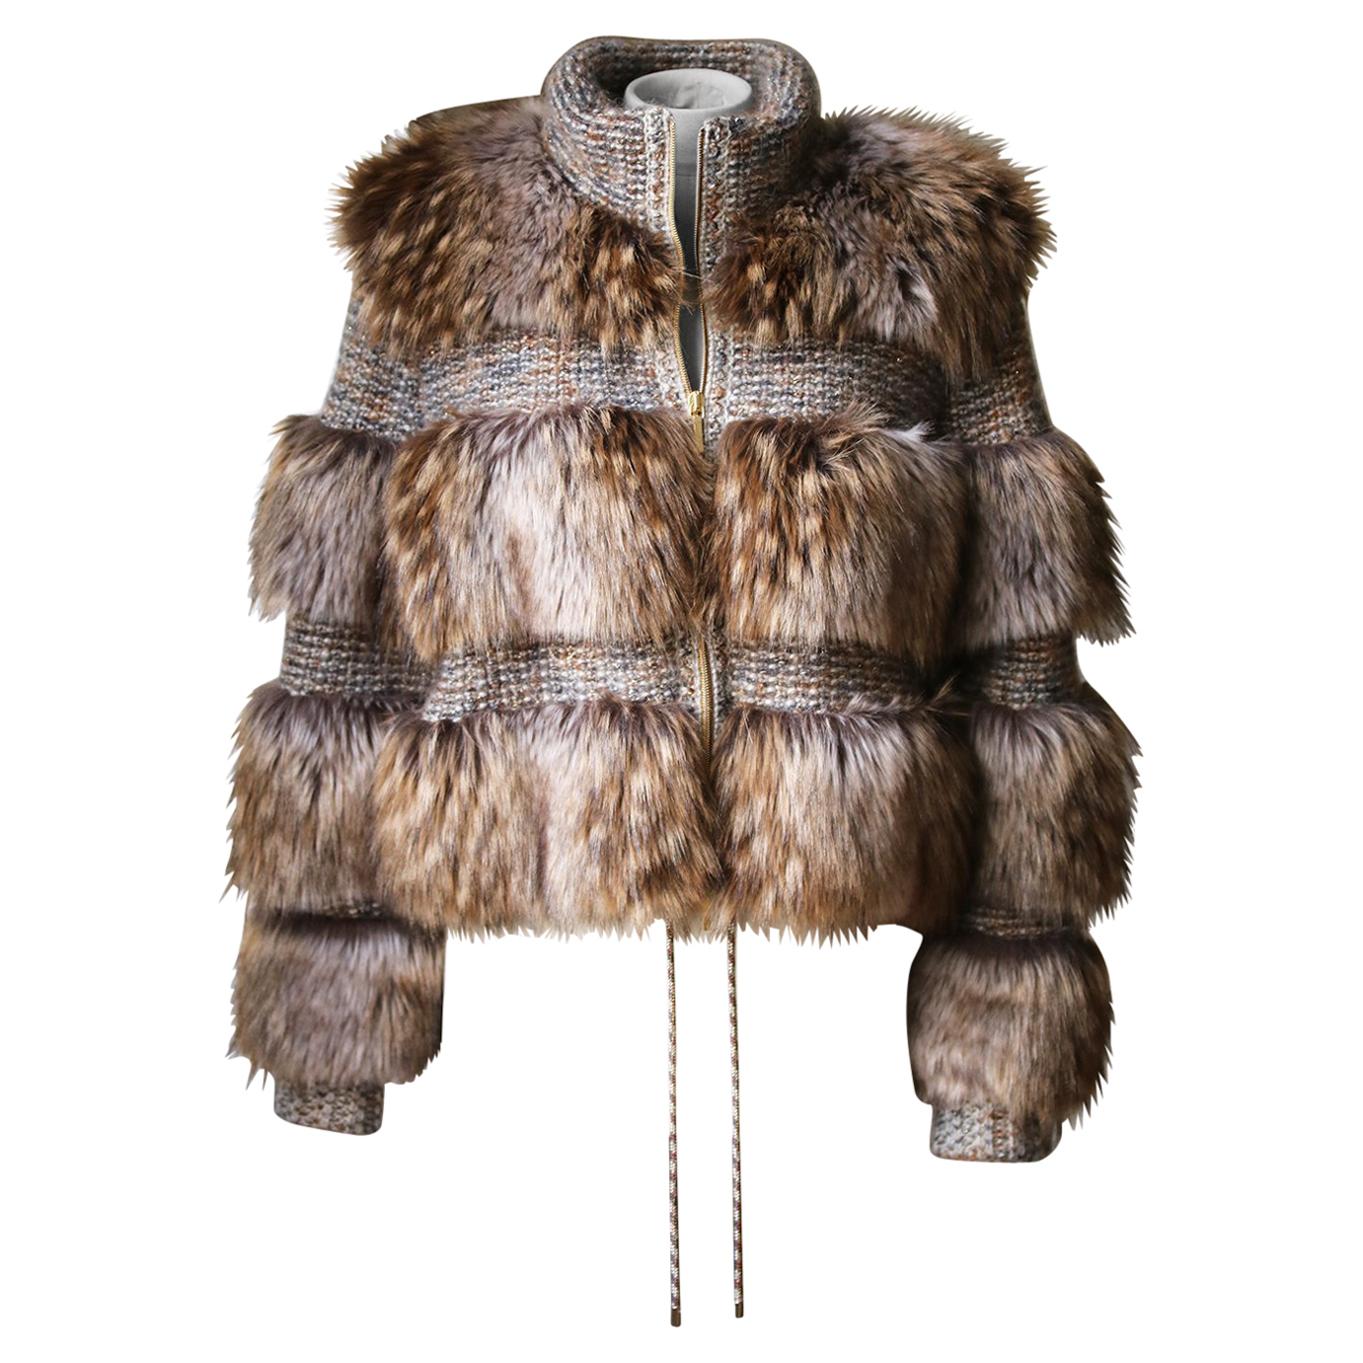 Vintage Designer Jacques Saint Laurent Curly Lamb Fur Jacket